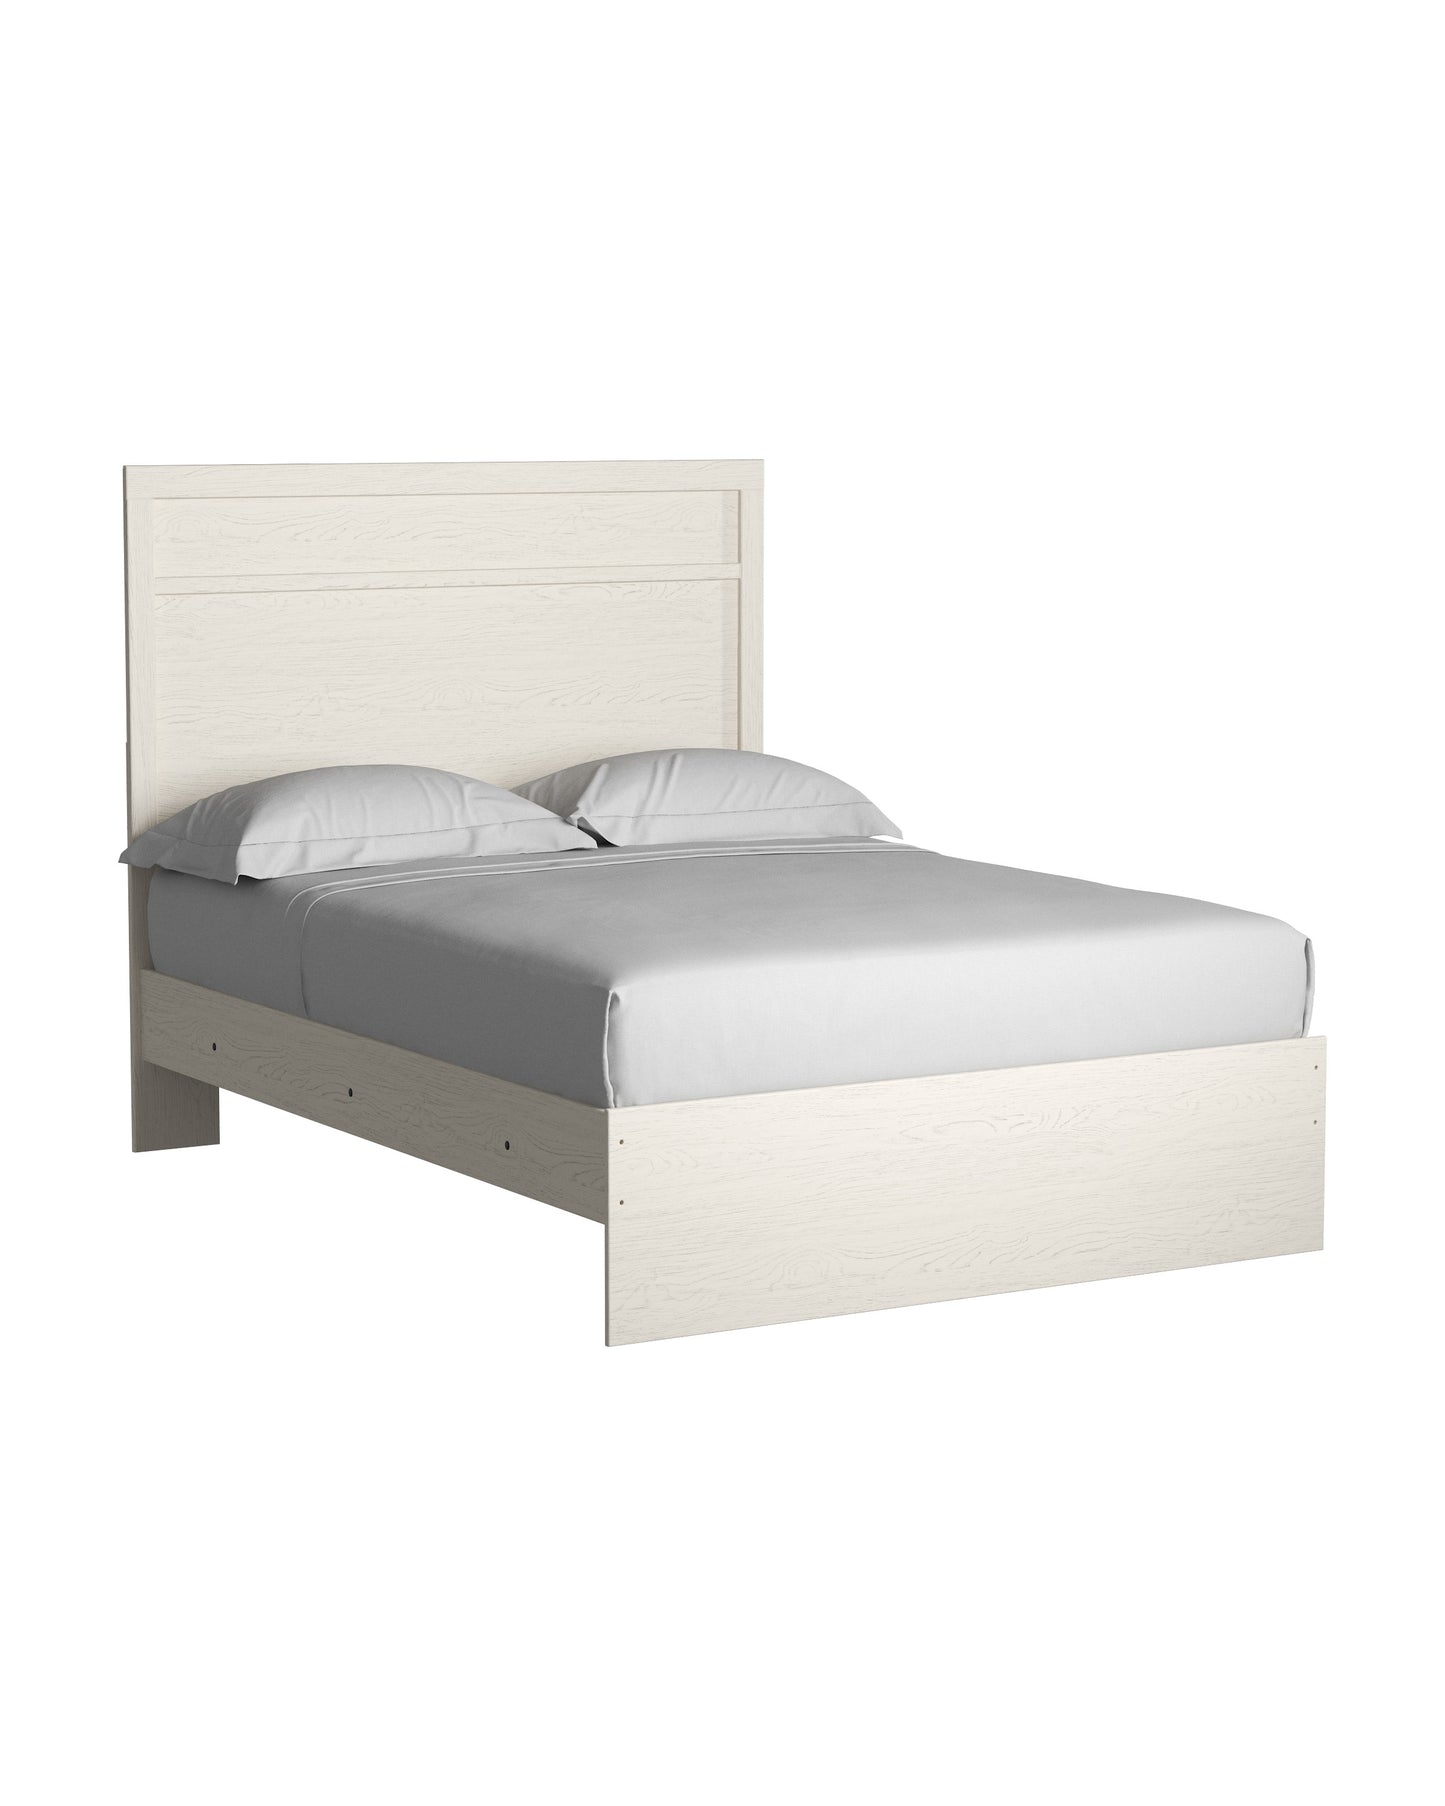 Stelsie Full Size Panel Bed